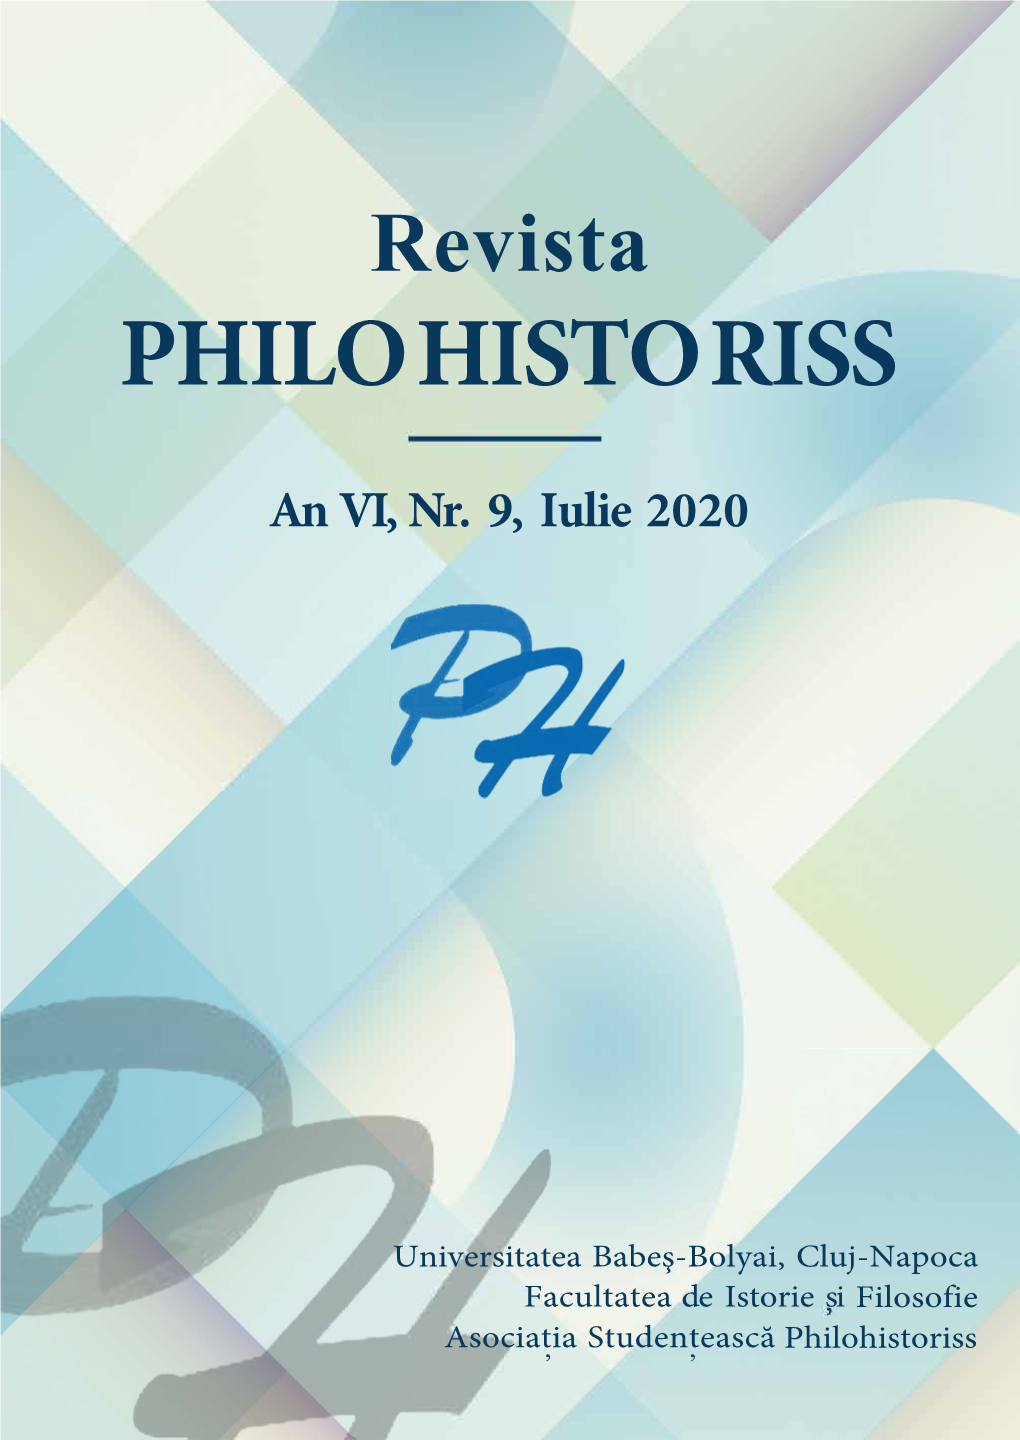 Revista-Philohistoriss-An-VI-Nr